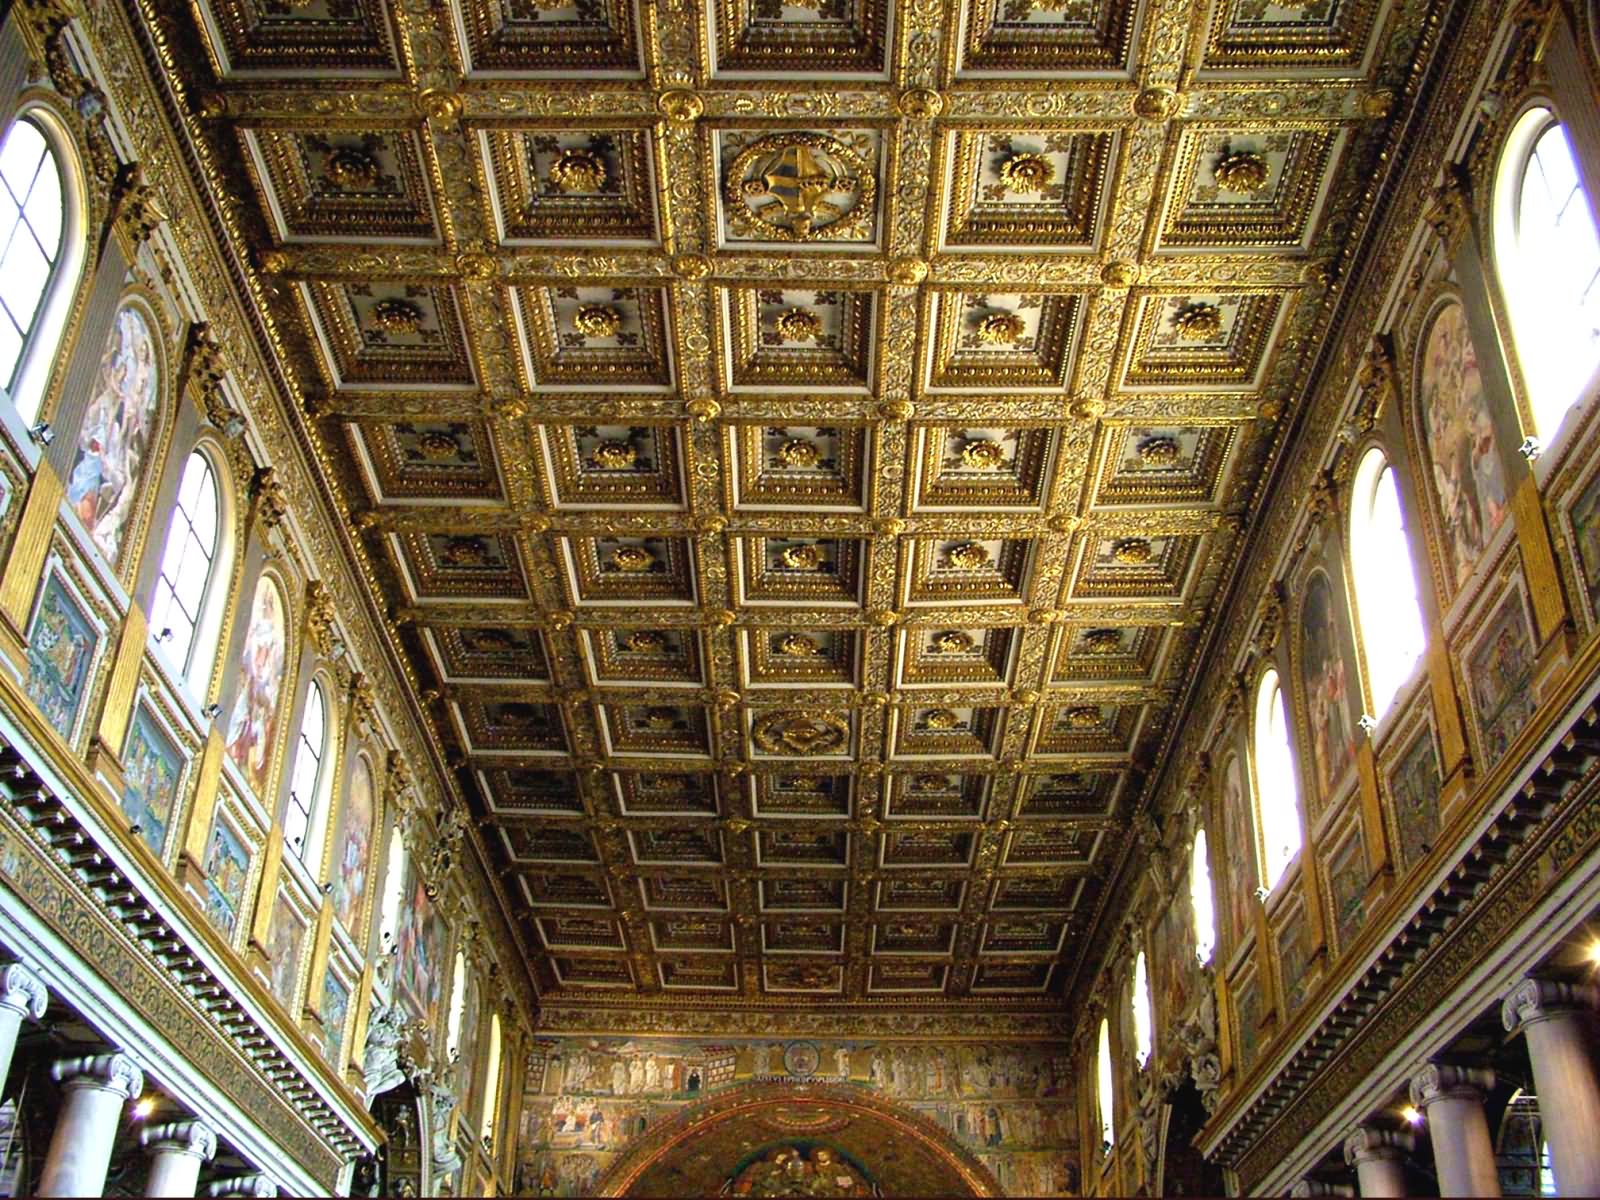 Beautiful Roof Architecture Inside Basilica di Santa Maria Maggiore